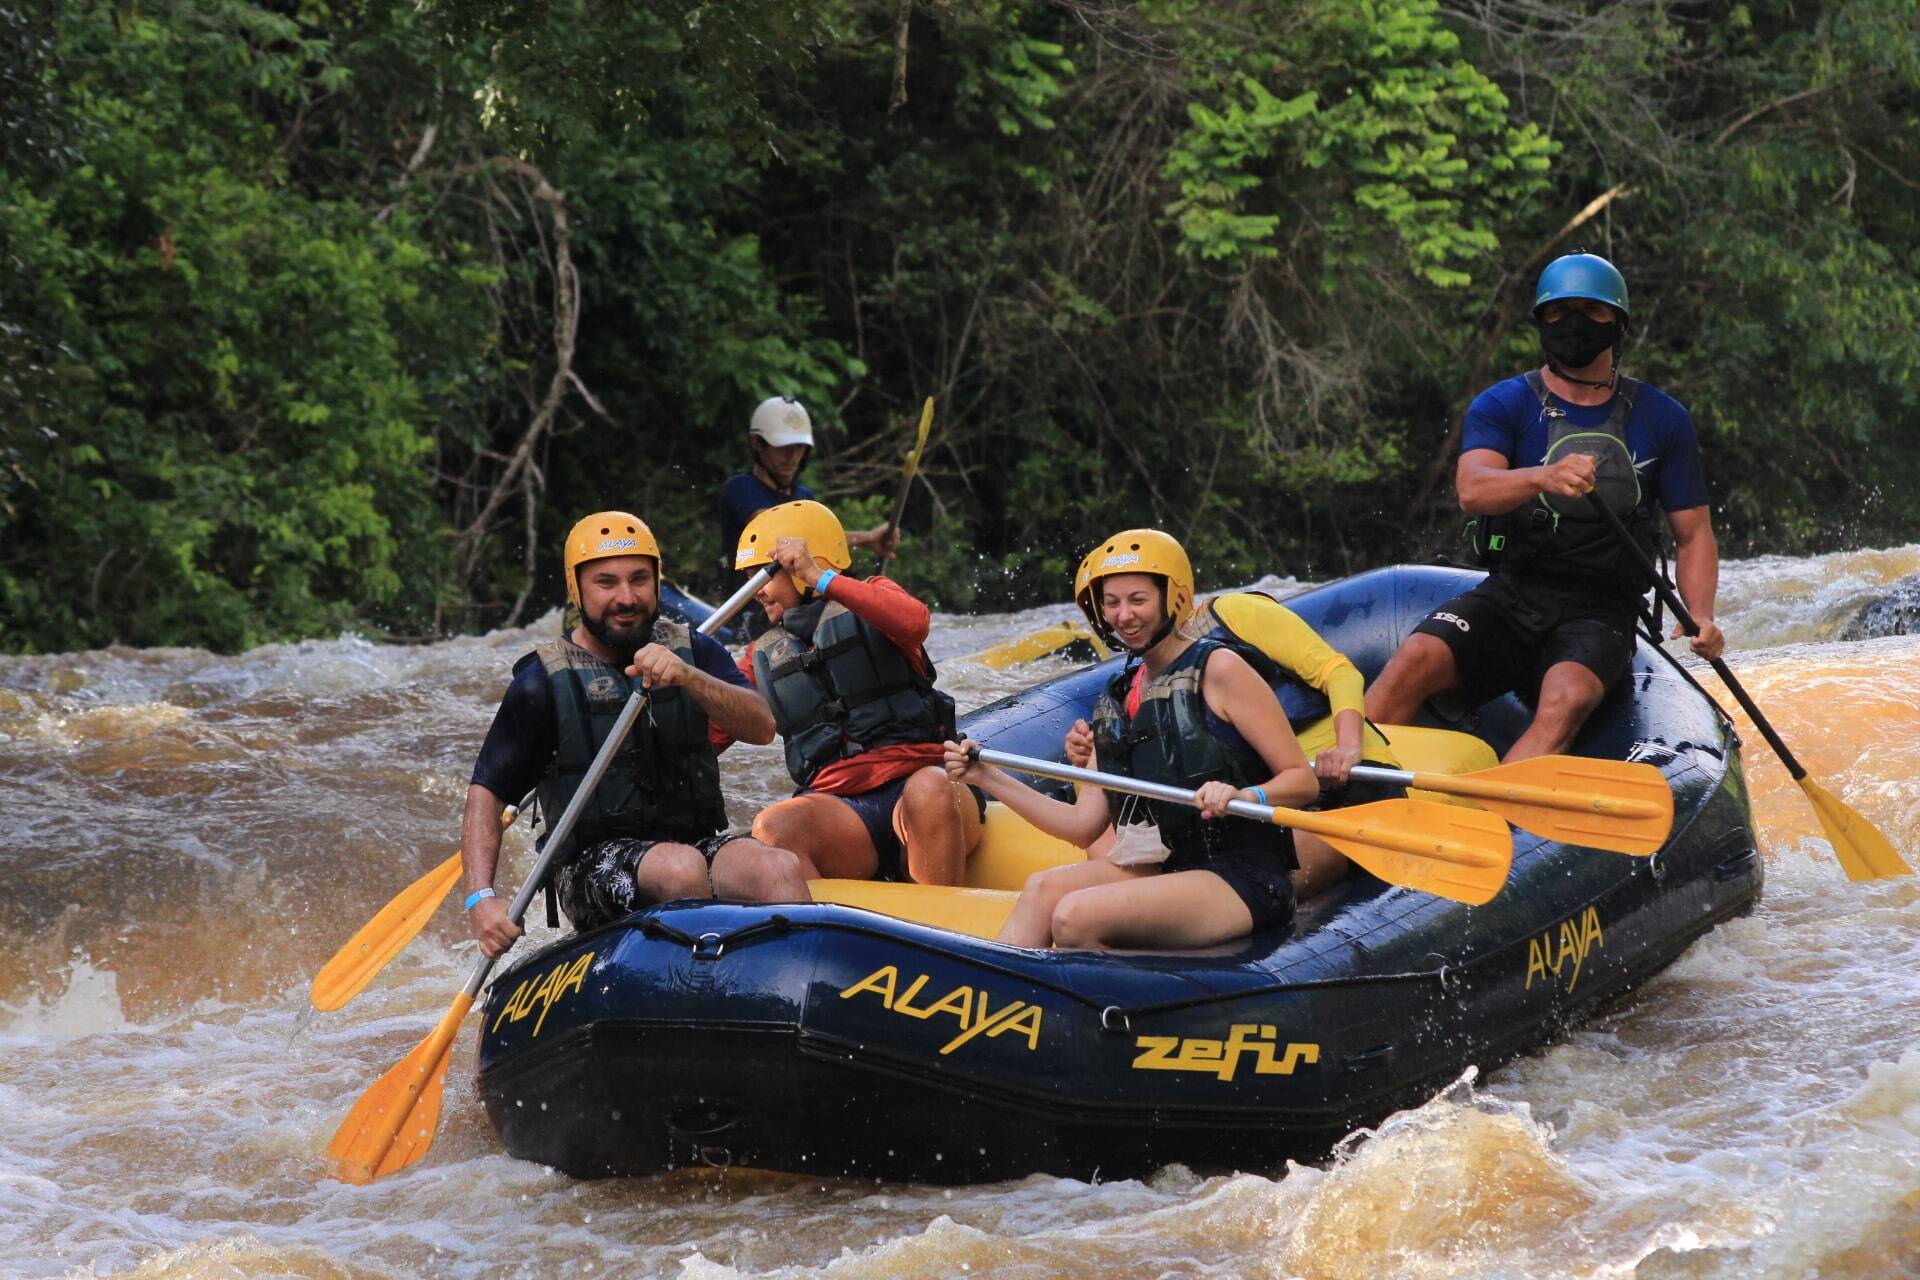 Sugestão para fazer ao viajar nas férias de julho: Rafting em Brotas (São Paulo).